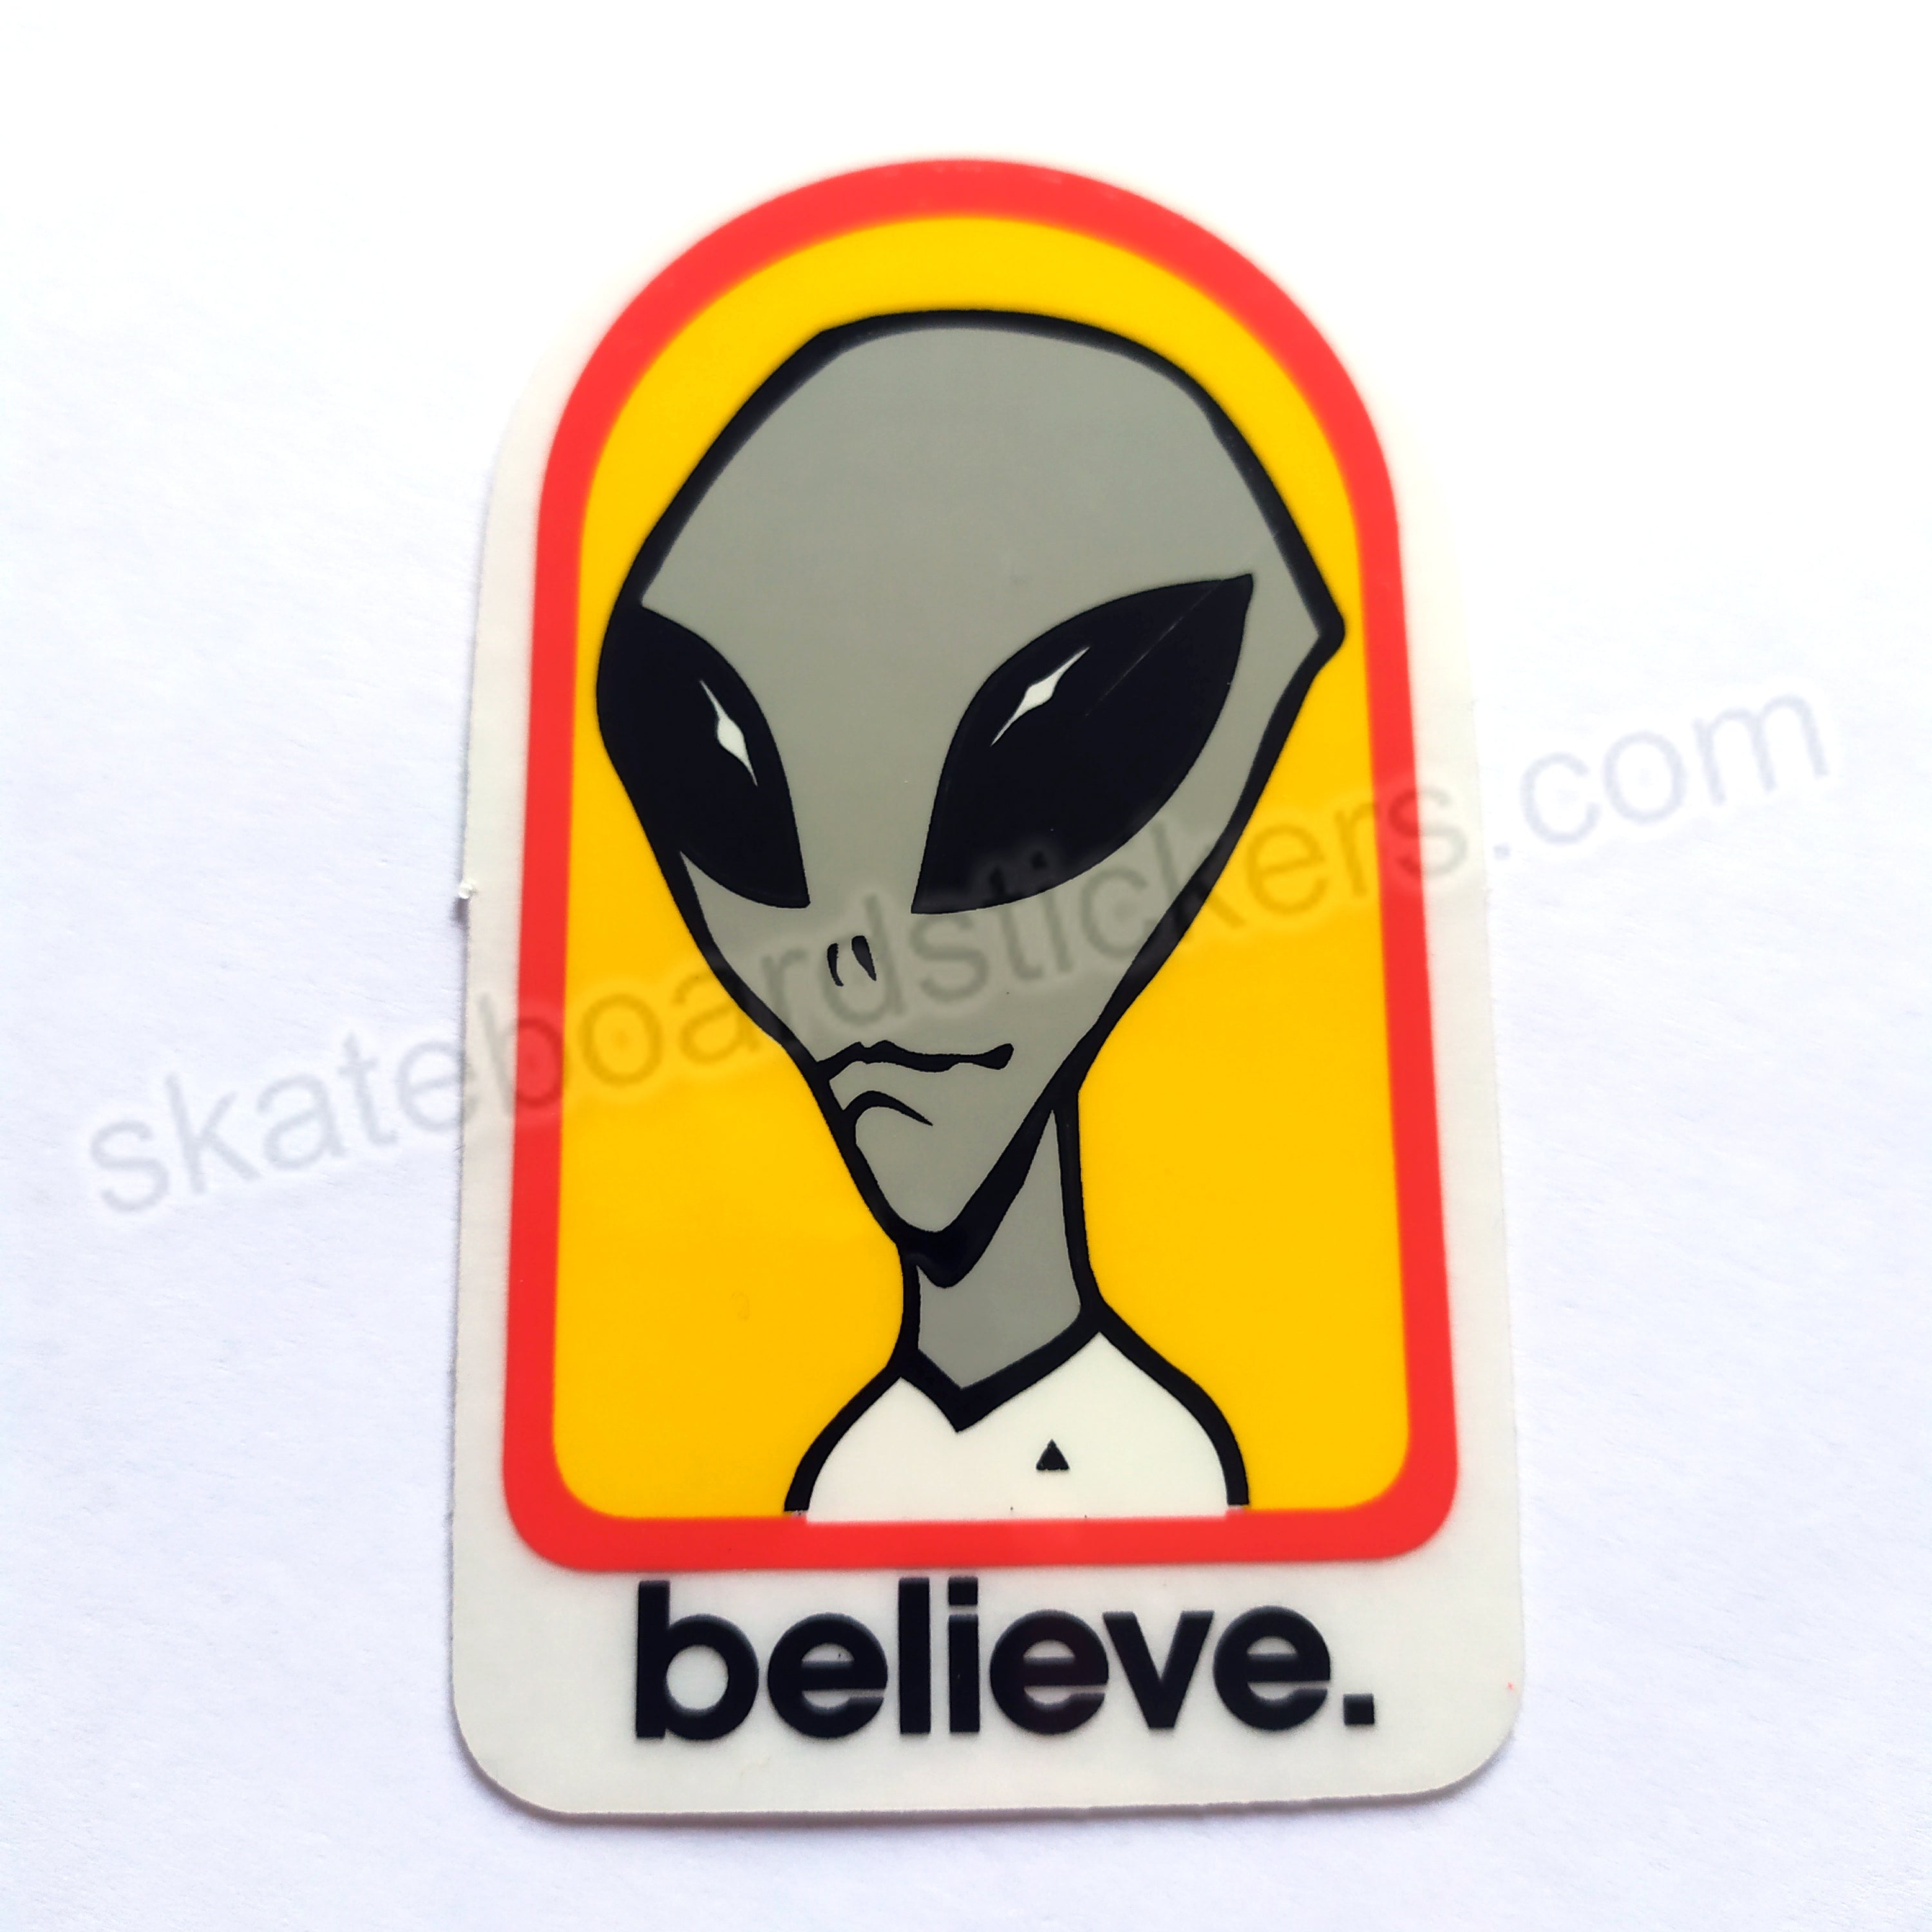 Alien Workshop Skateboard Sticker - Believe - 8cm high approx - SkateboardStickers.com